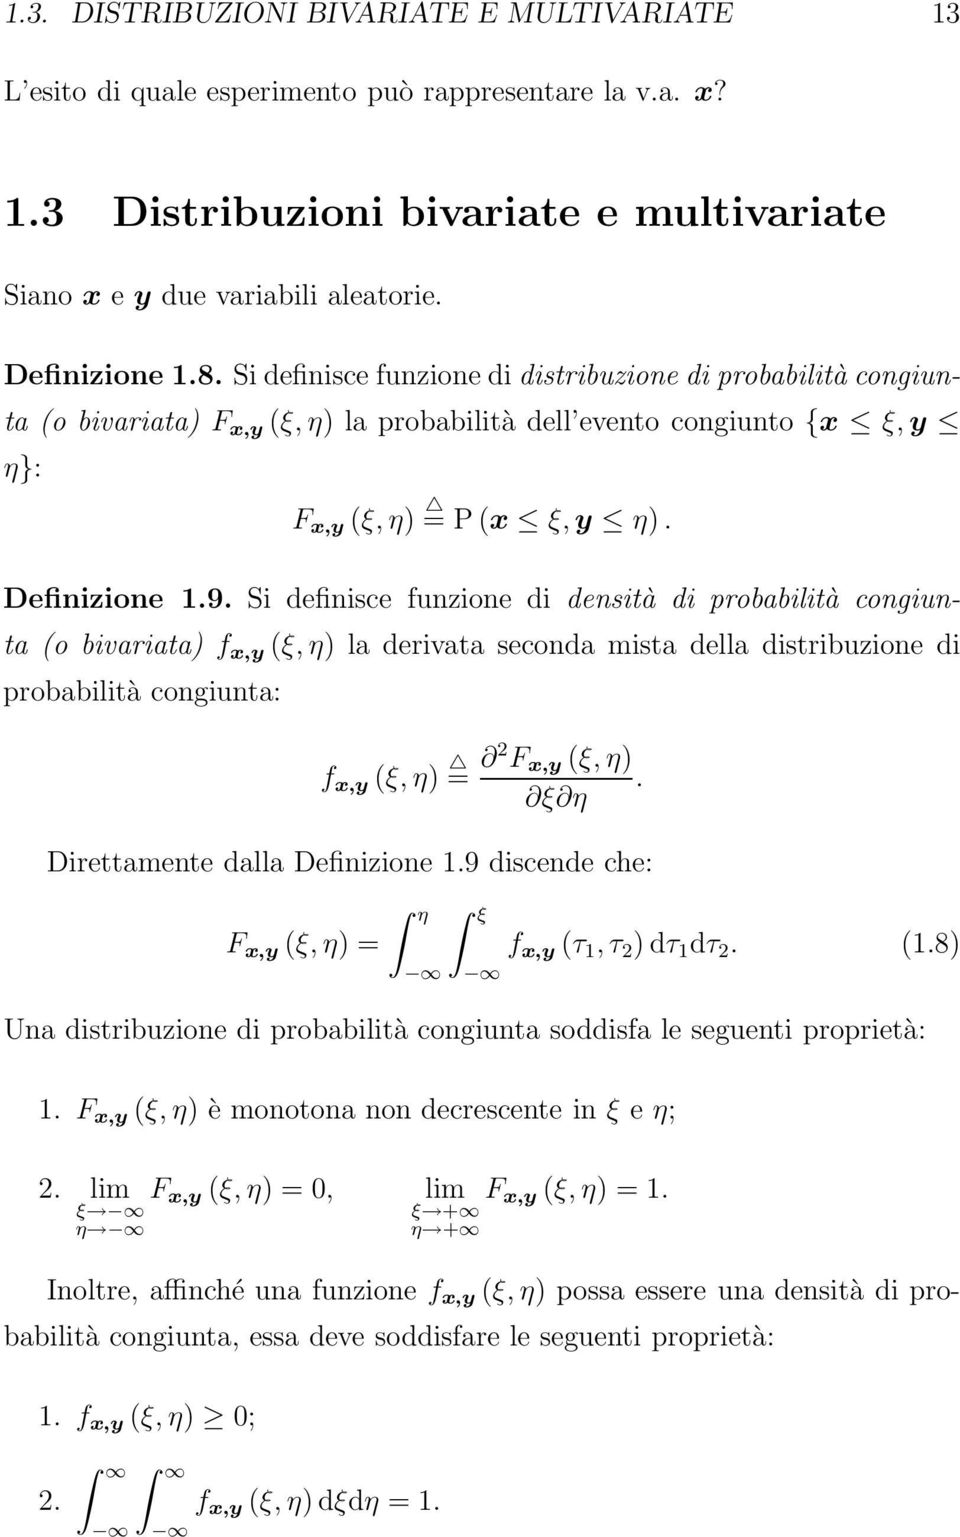 Si definisce funzione di densità di probabilità congiunta (o bivariata) f x,y (ξ, η) la derivata seconda mista della distribuzione di probabilità congiunta: f x,y (ξ, η) = 2 F x,y (ξ, η).